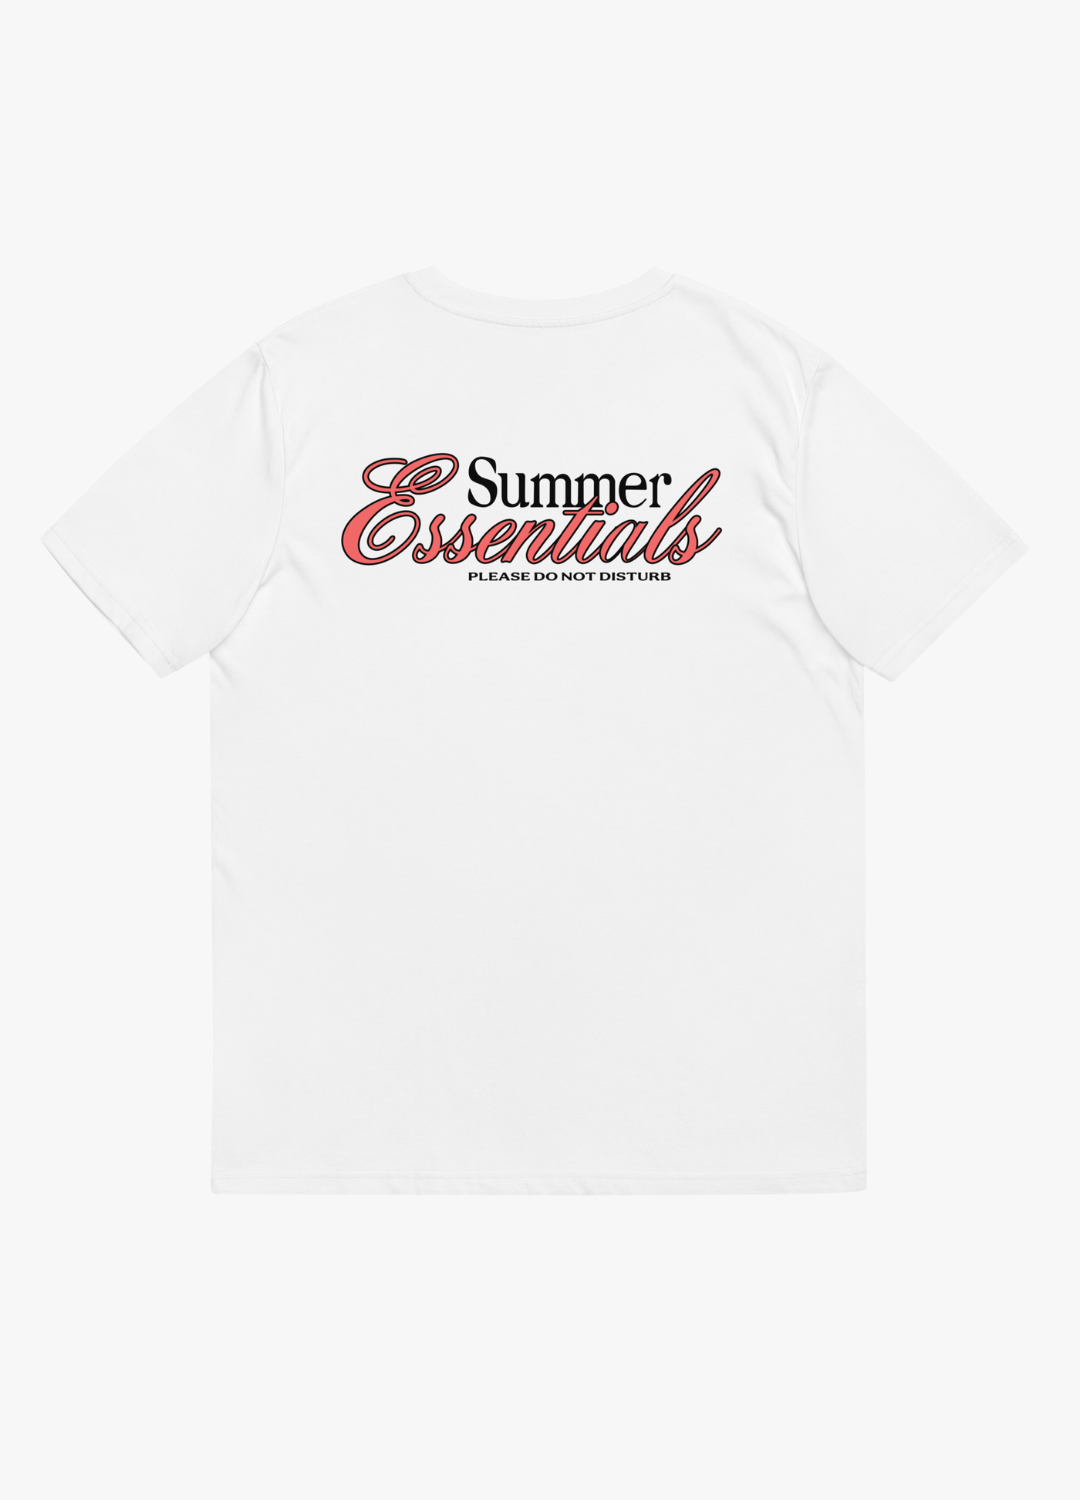 tshirt en coton biologique vegan summer essentials ne pas déranger pour homme et femme pour l'été slow fashion